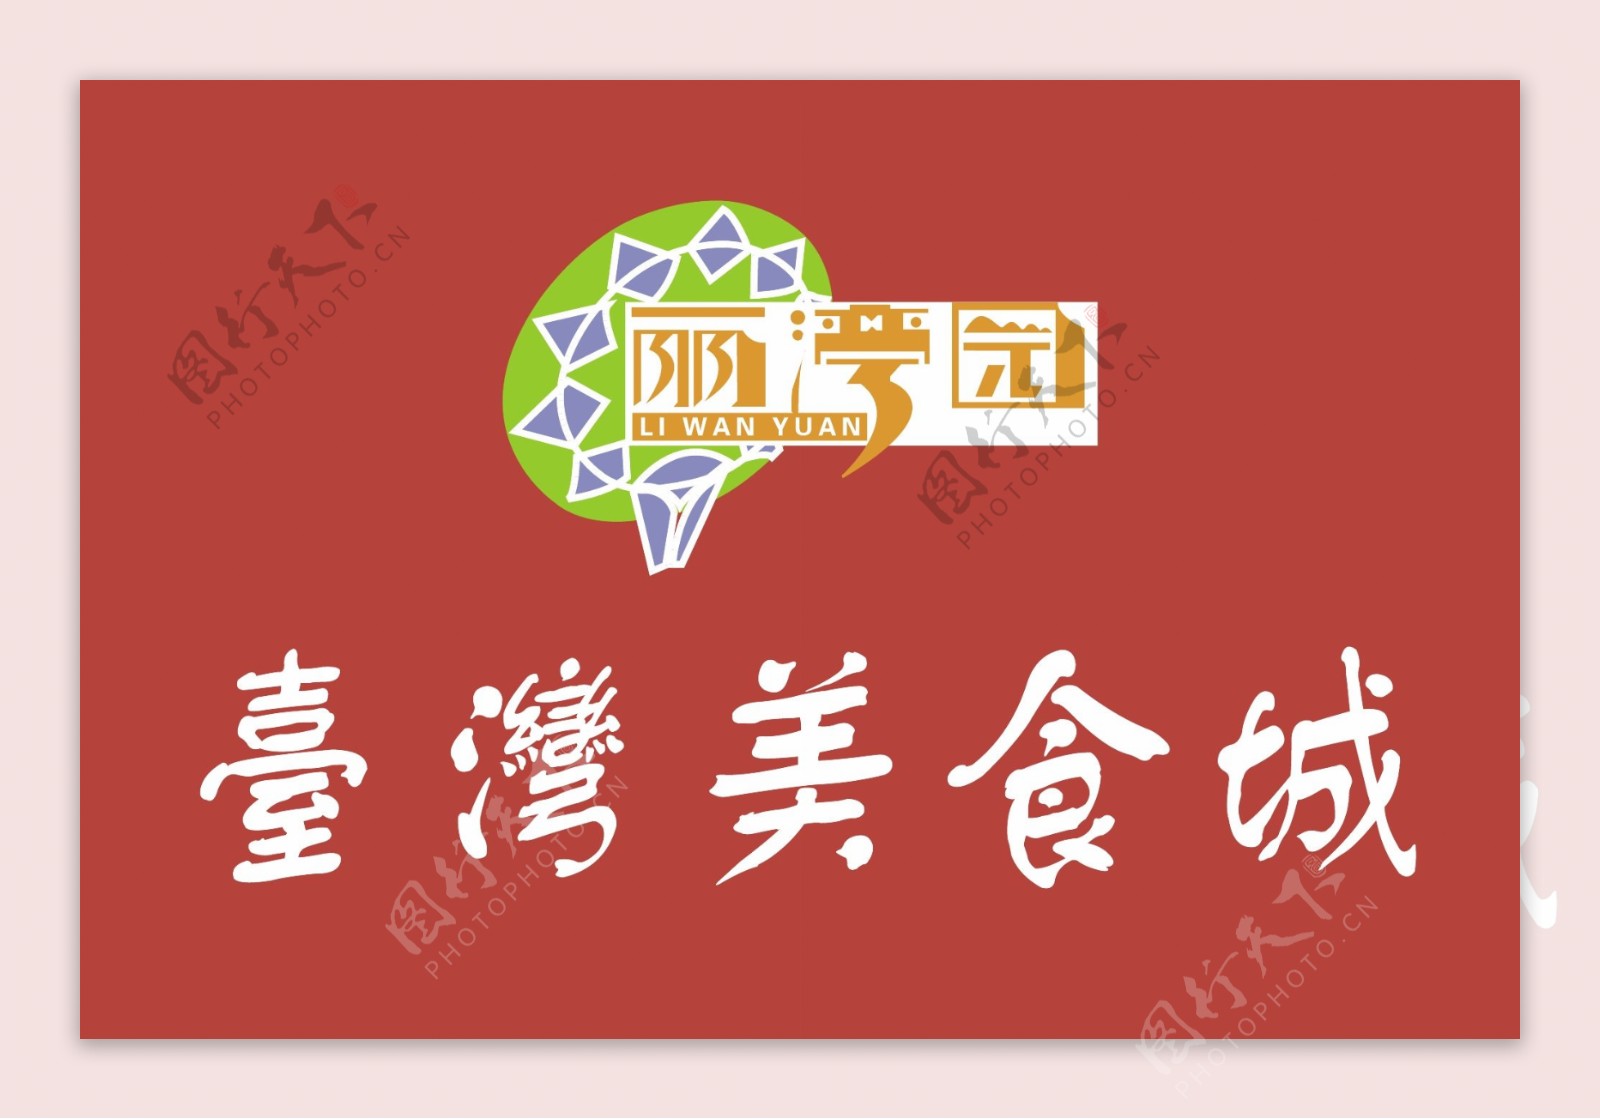 台湾美食城logo图片